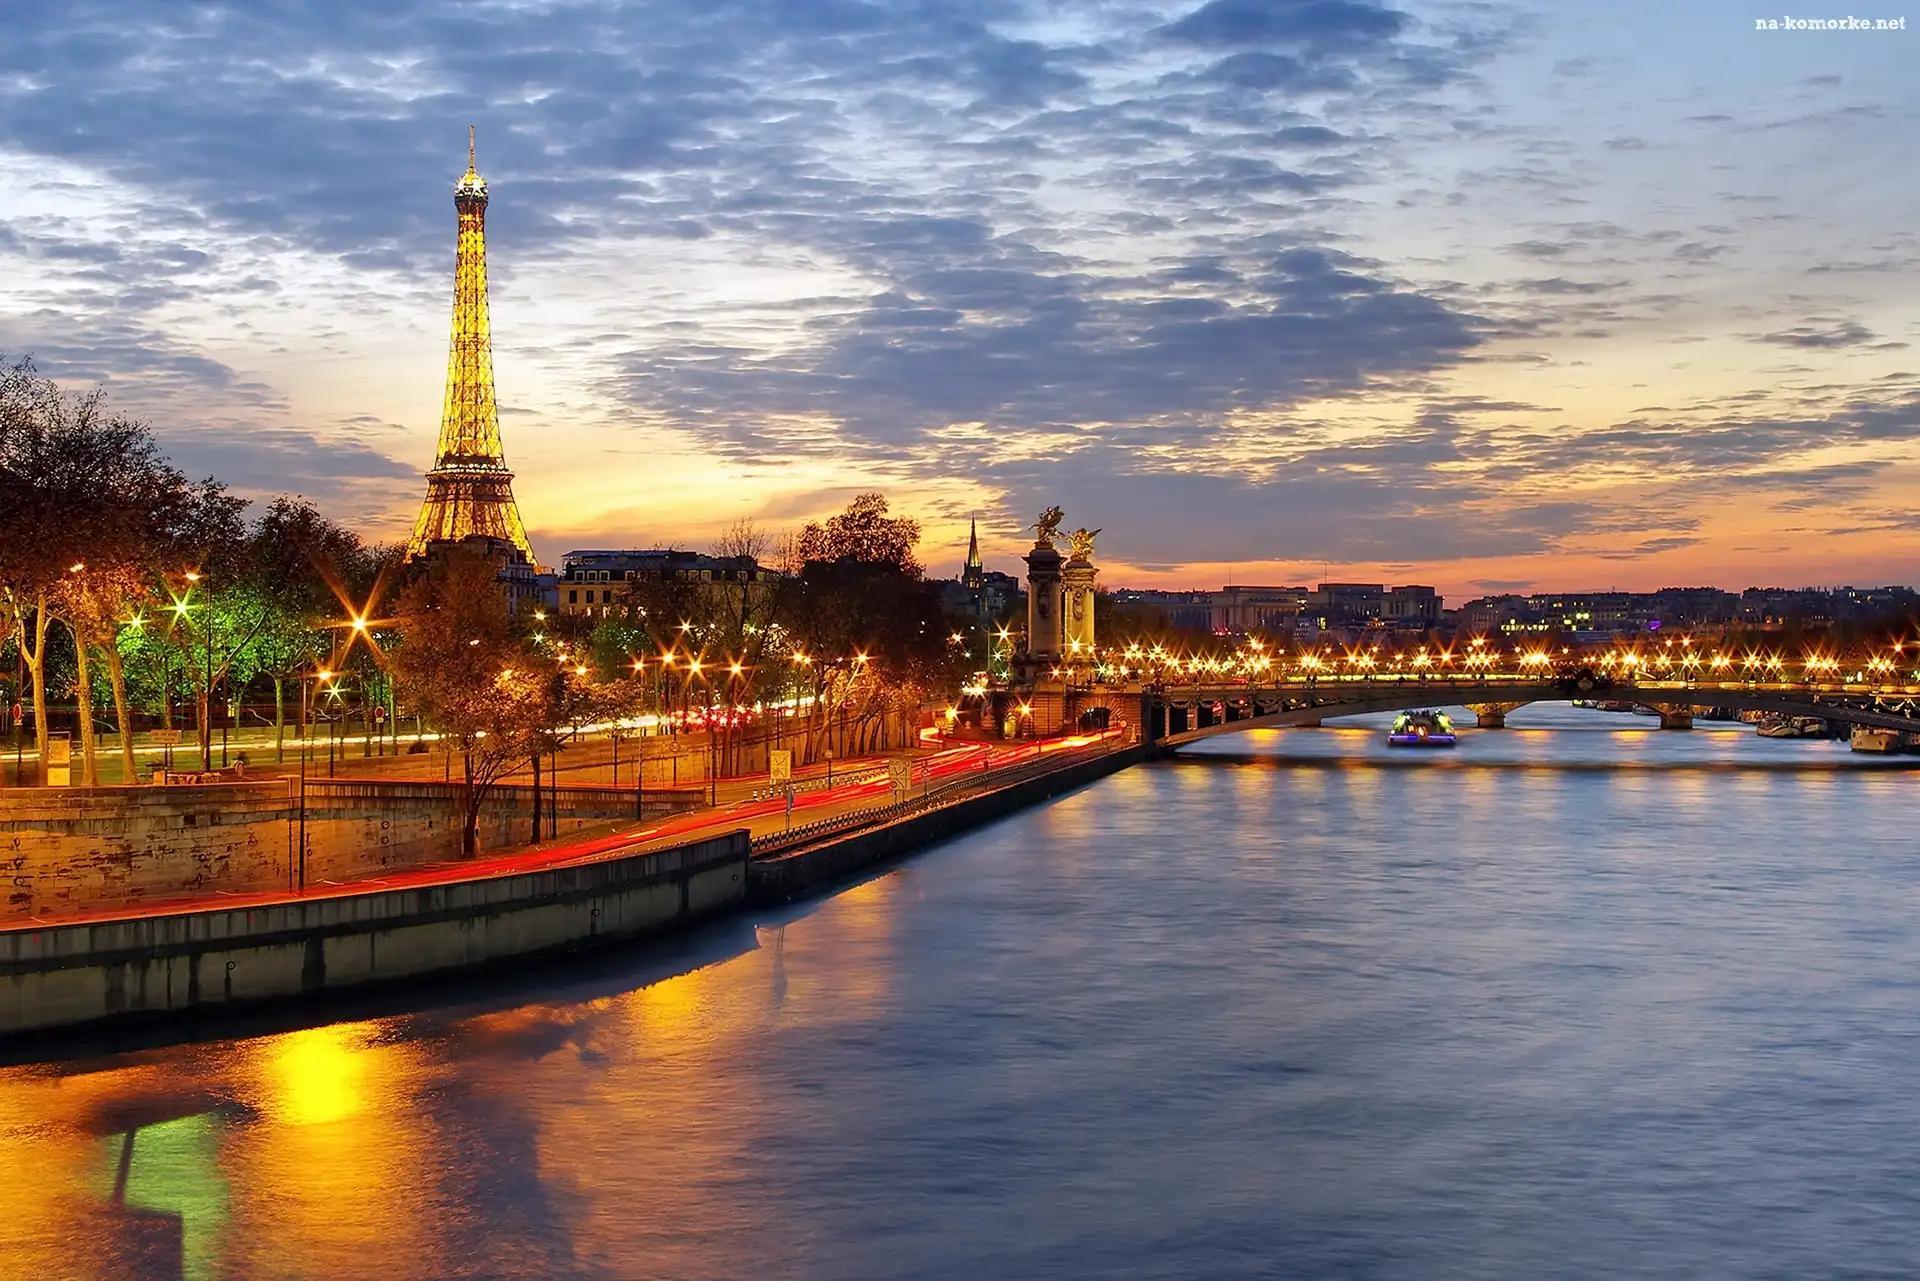 Paryż, Lampy, Oświetlenie, Wieża Eiffla, Most, Rzeka, Ulice